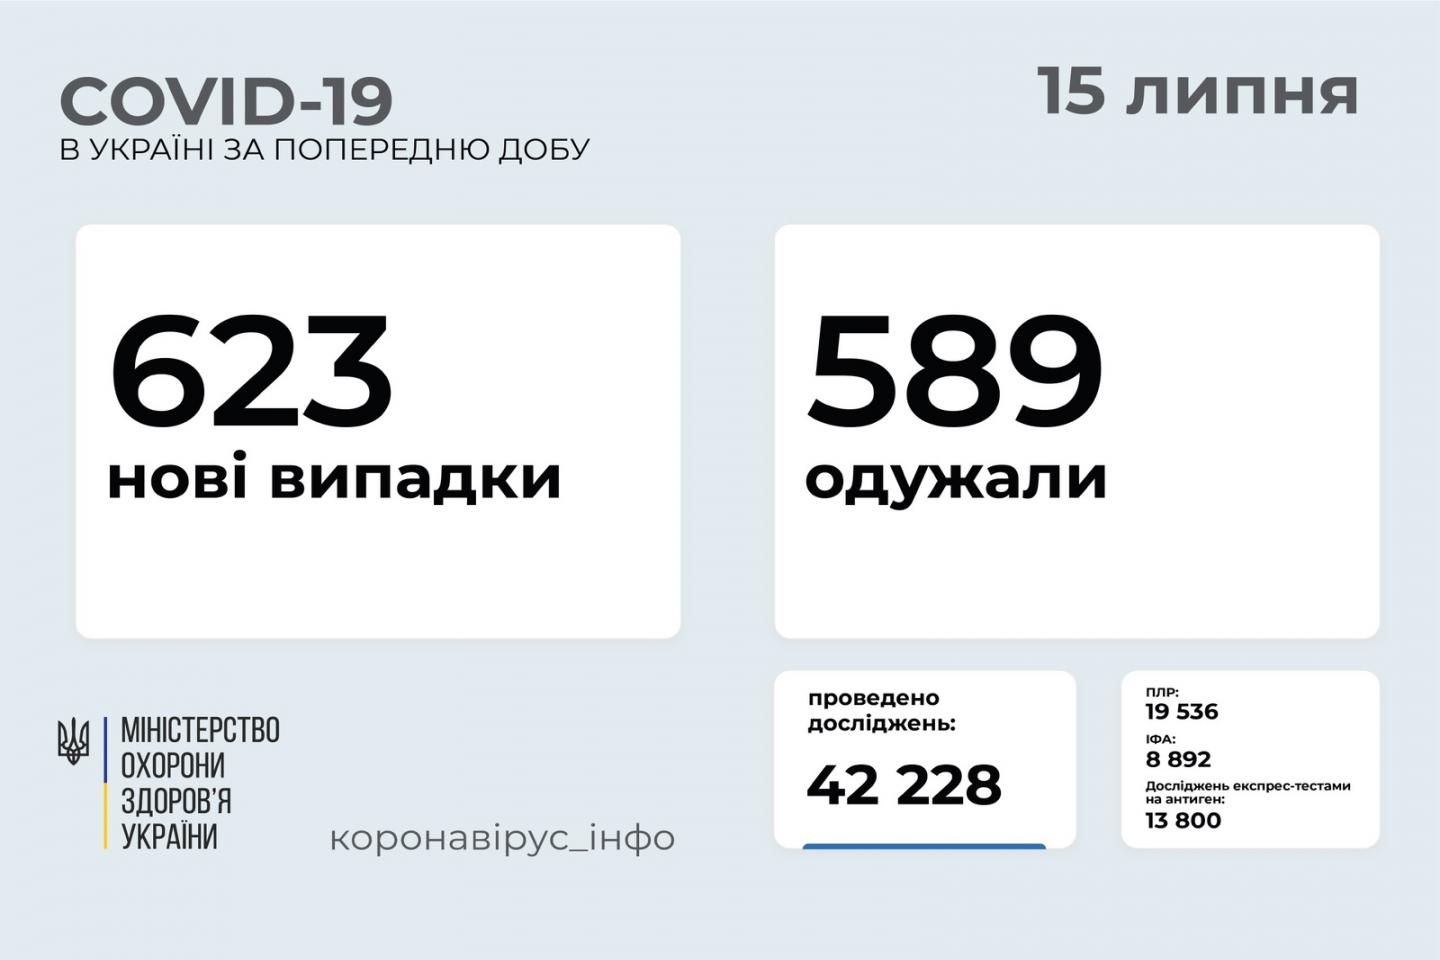 http://dunrada.gov.ua/uploadfile/archive_news/2021/07/15/2021-07-15_6375/images/images-32237.jpg